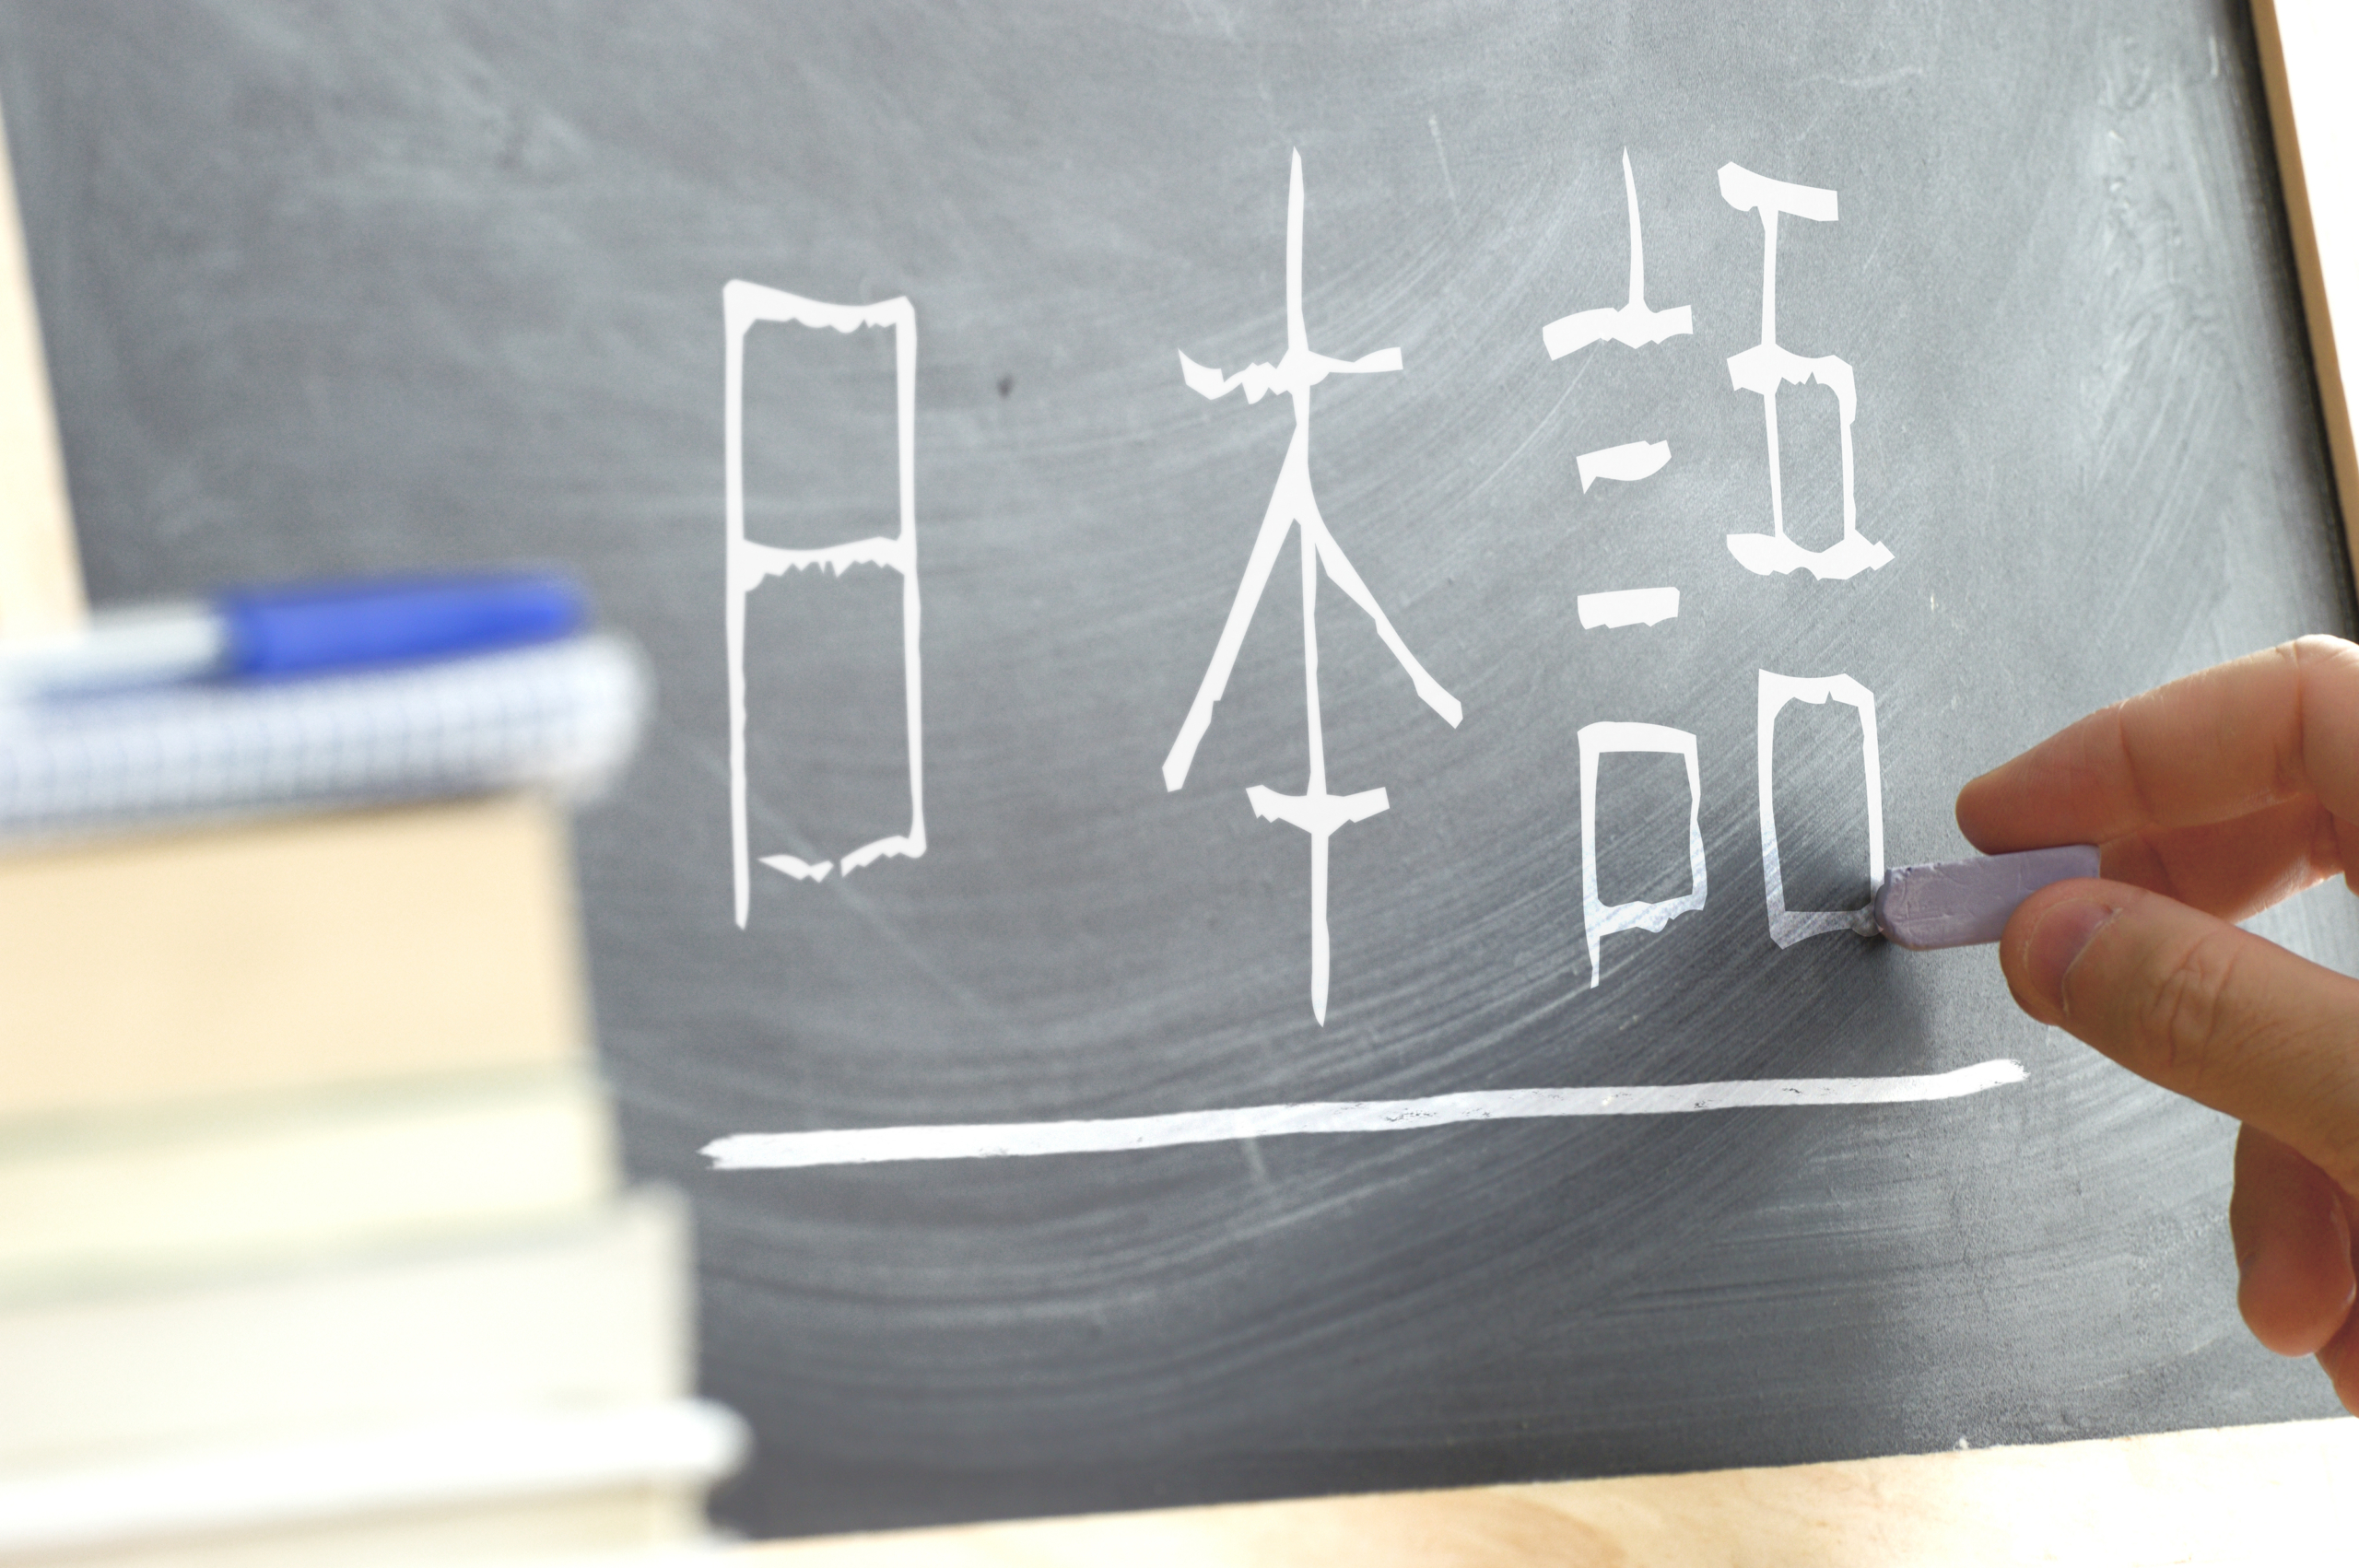 Kỳ thi tiếng Nhật JLPT là gì? Các cấp độ, cách tính điểm và phần thi kỹ năng